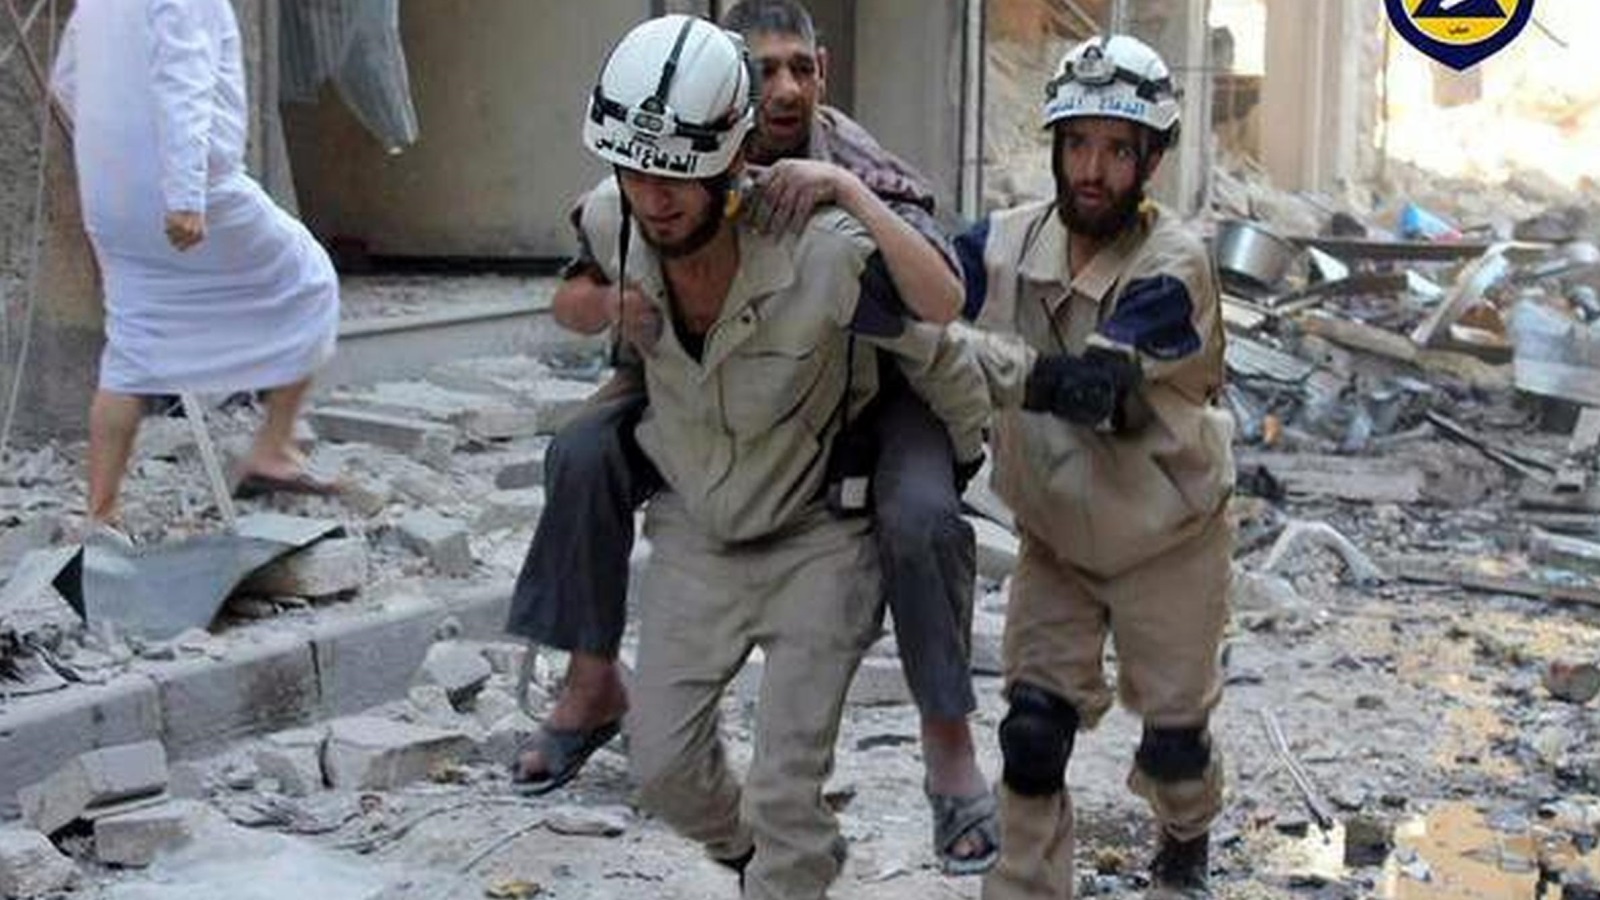 التقارير الأممية تشيد بشجاعة عناصر الخوذ البيضاء وتضحيتهم لإنقاذ المدنيين (الأوروبية)